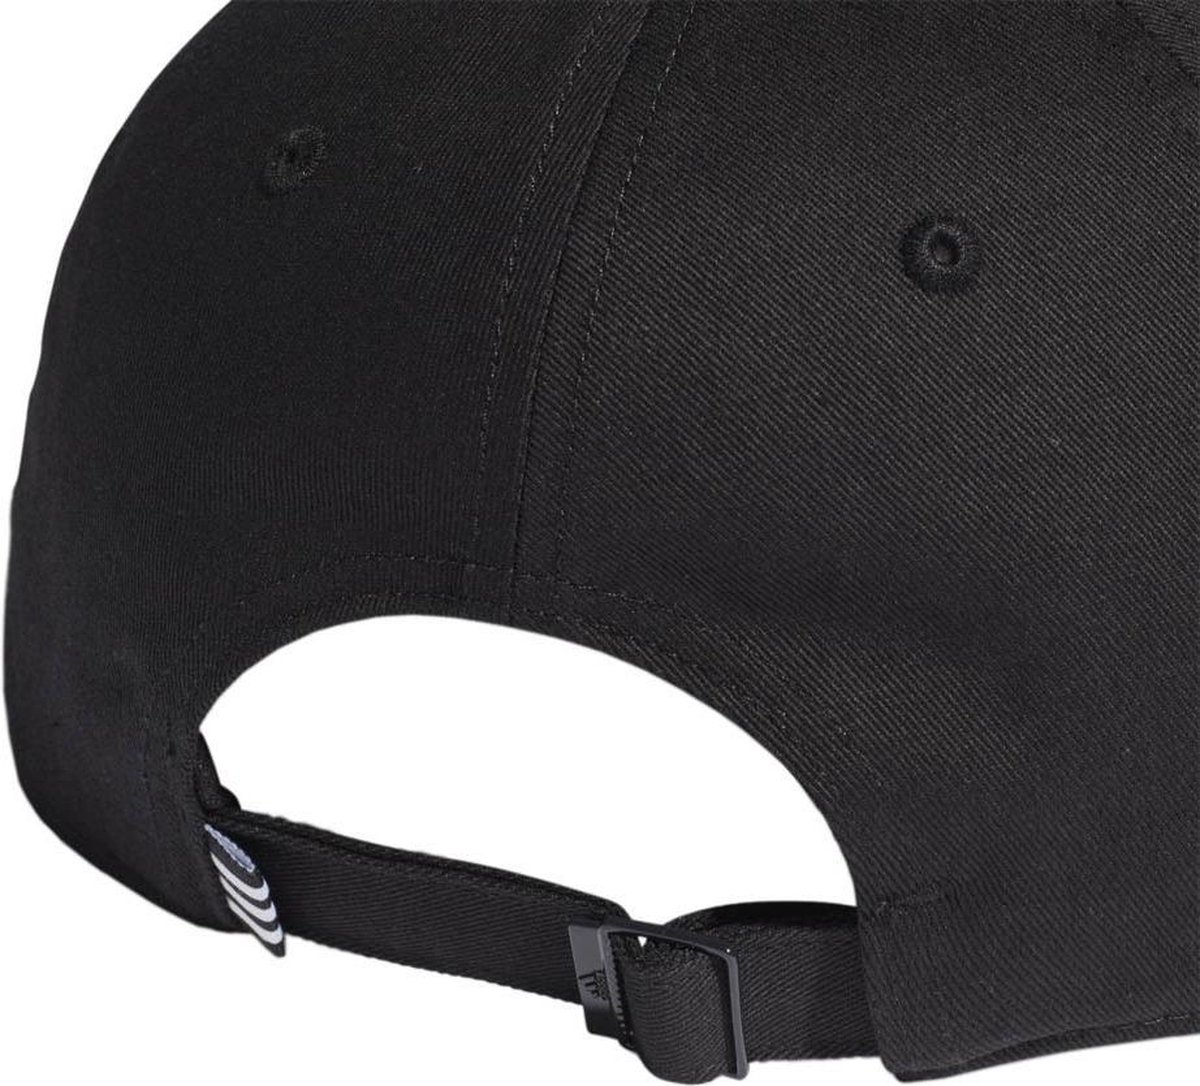 adidas - Baseball Cap Cotton - Zwarte Pet - Men - Zwart | bol